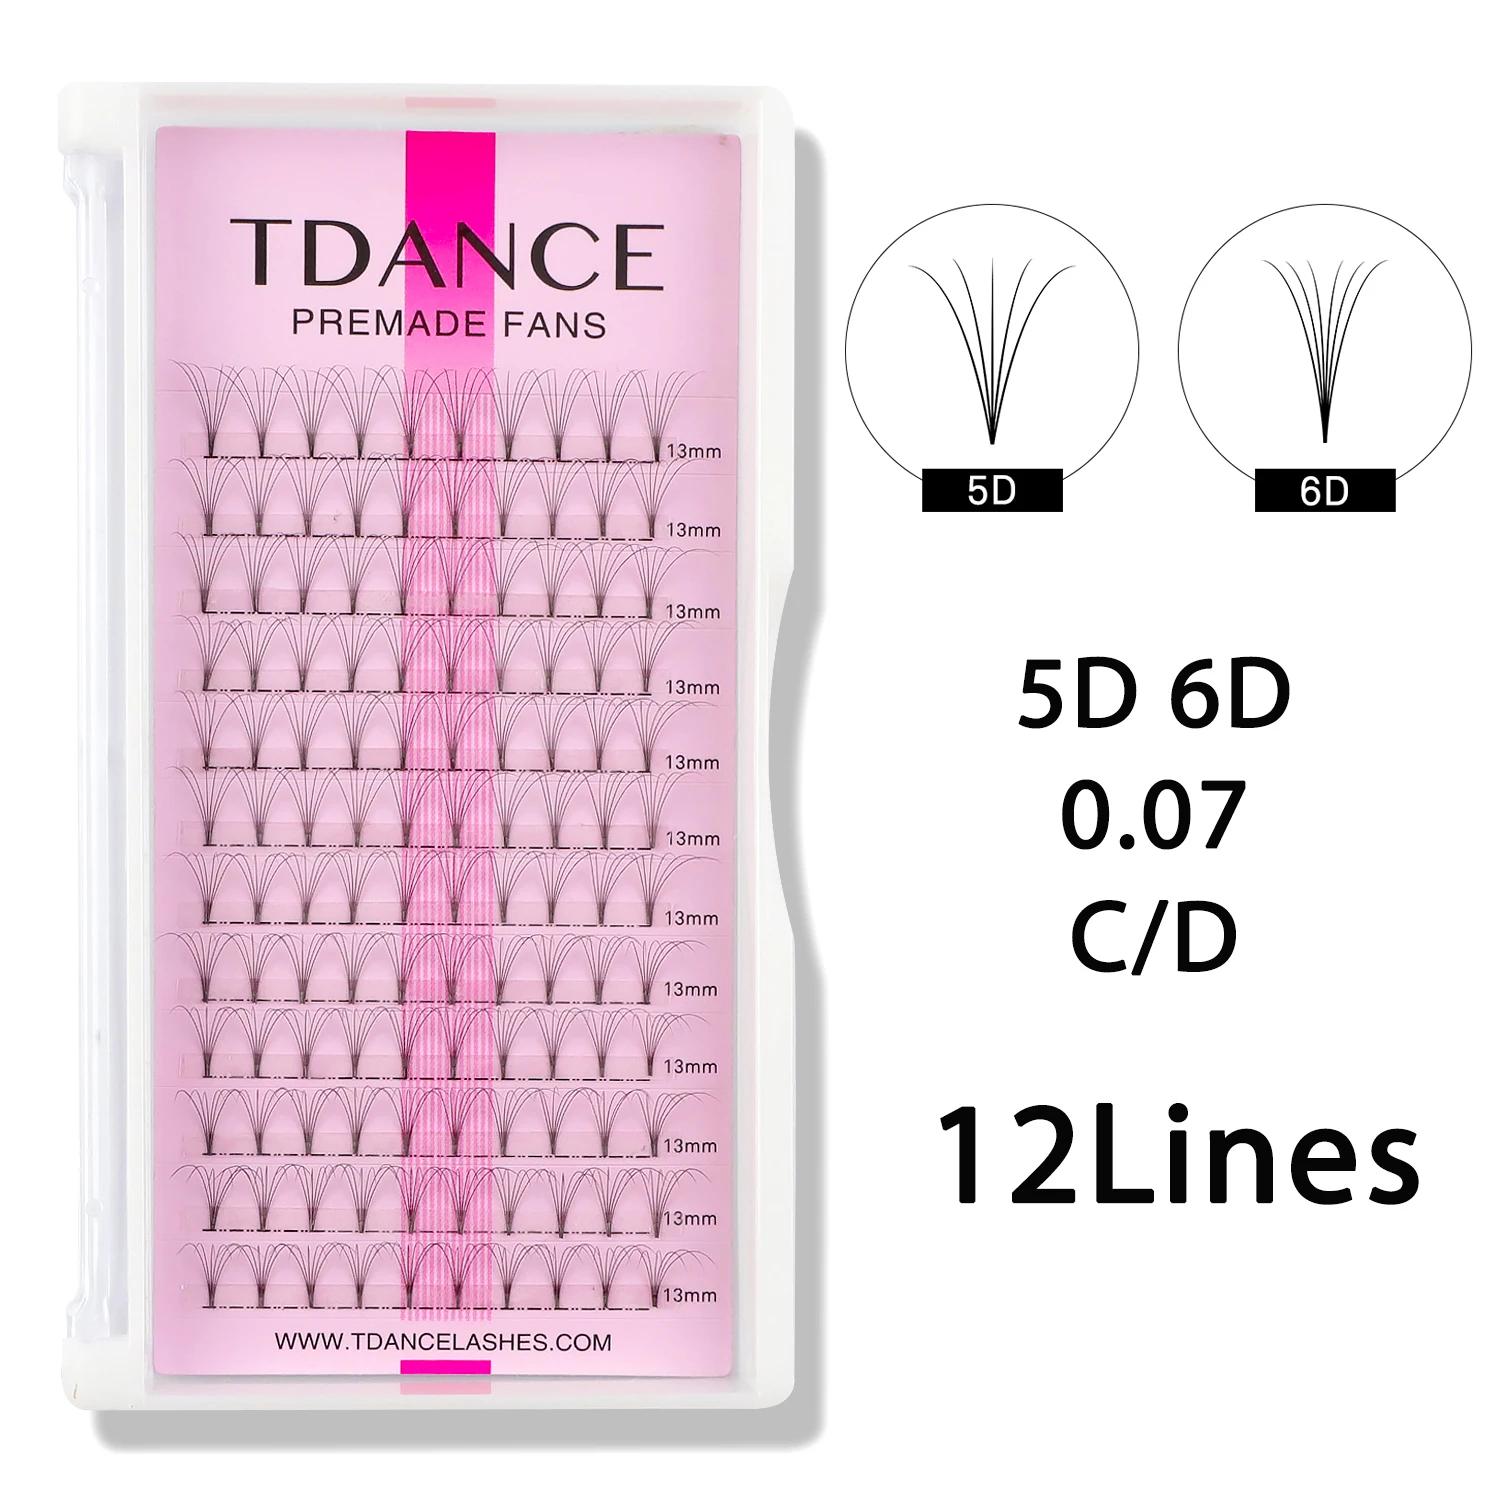 TDANCE Premade Volume Fans 3D/4D/5D/6D/7D  ..